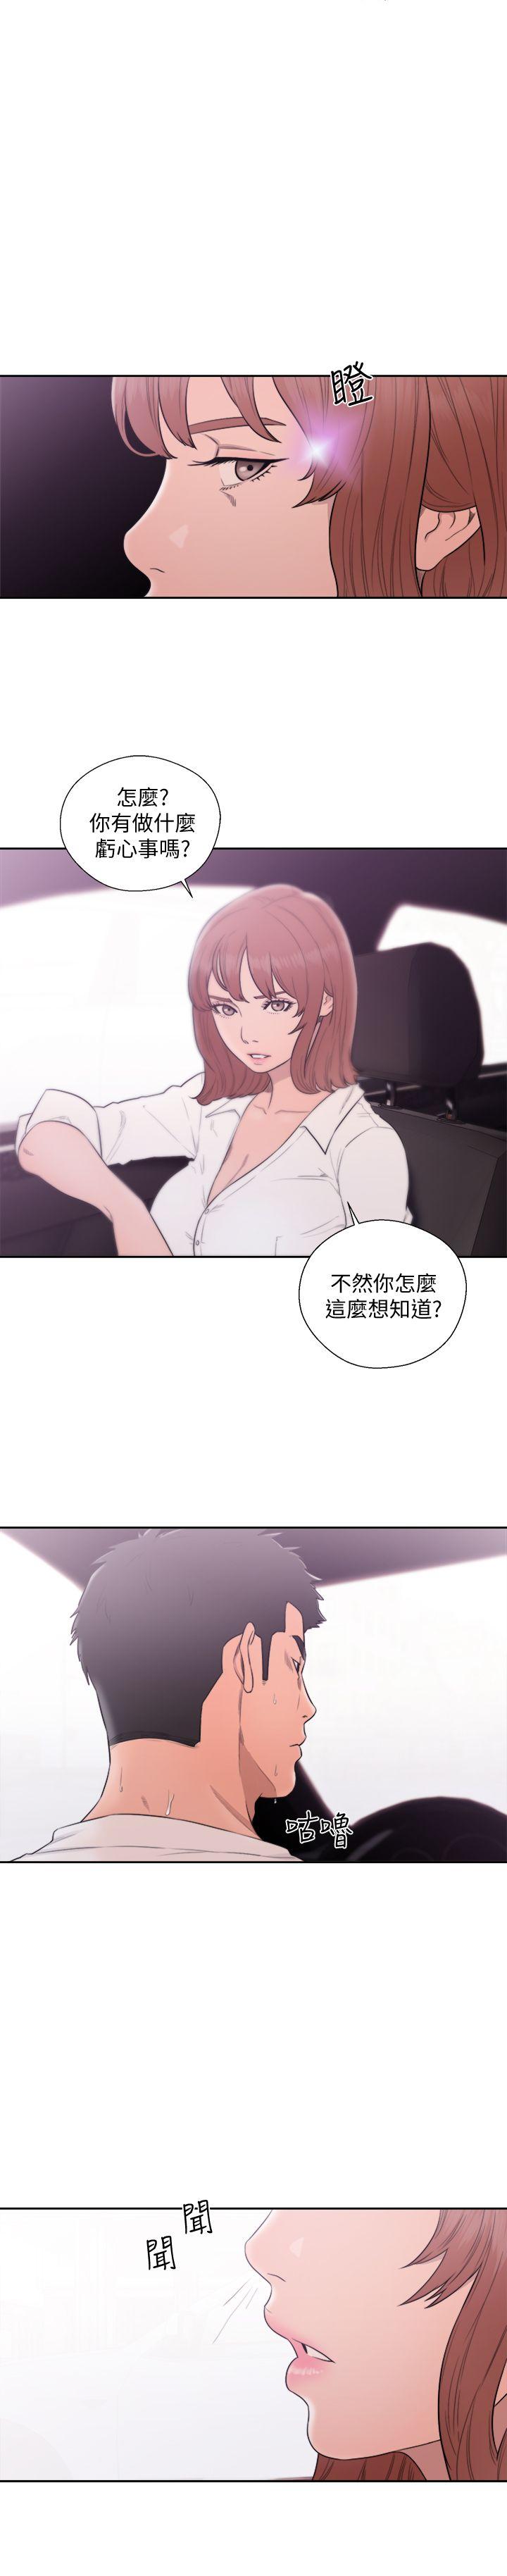 解禁:初始的快感  第69话-昭妍和她们的初次见面 漫画图片1.jpg